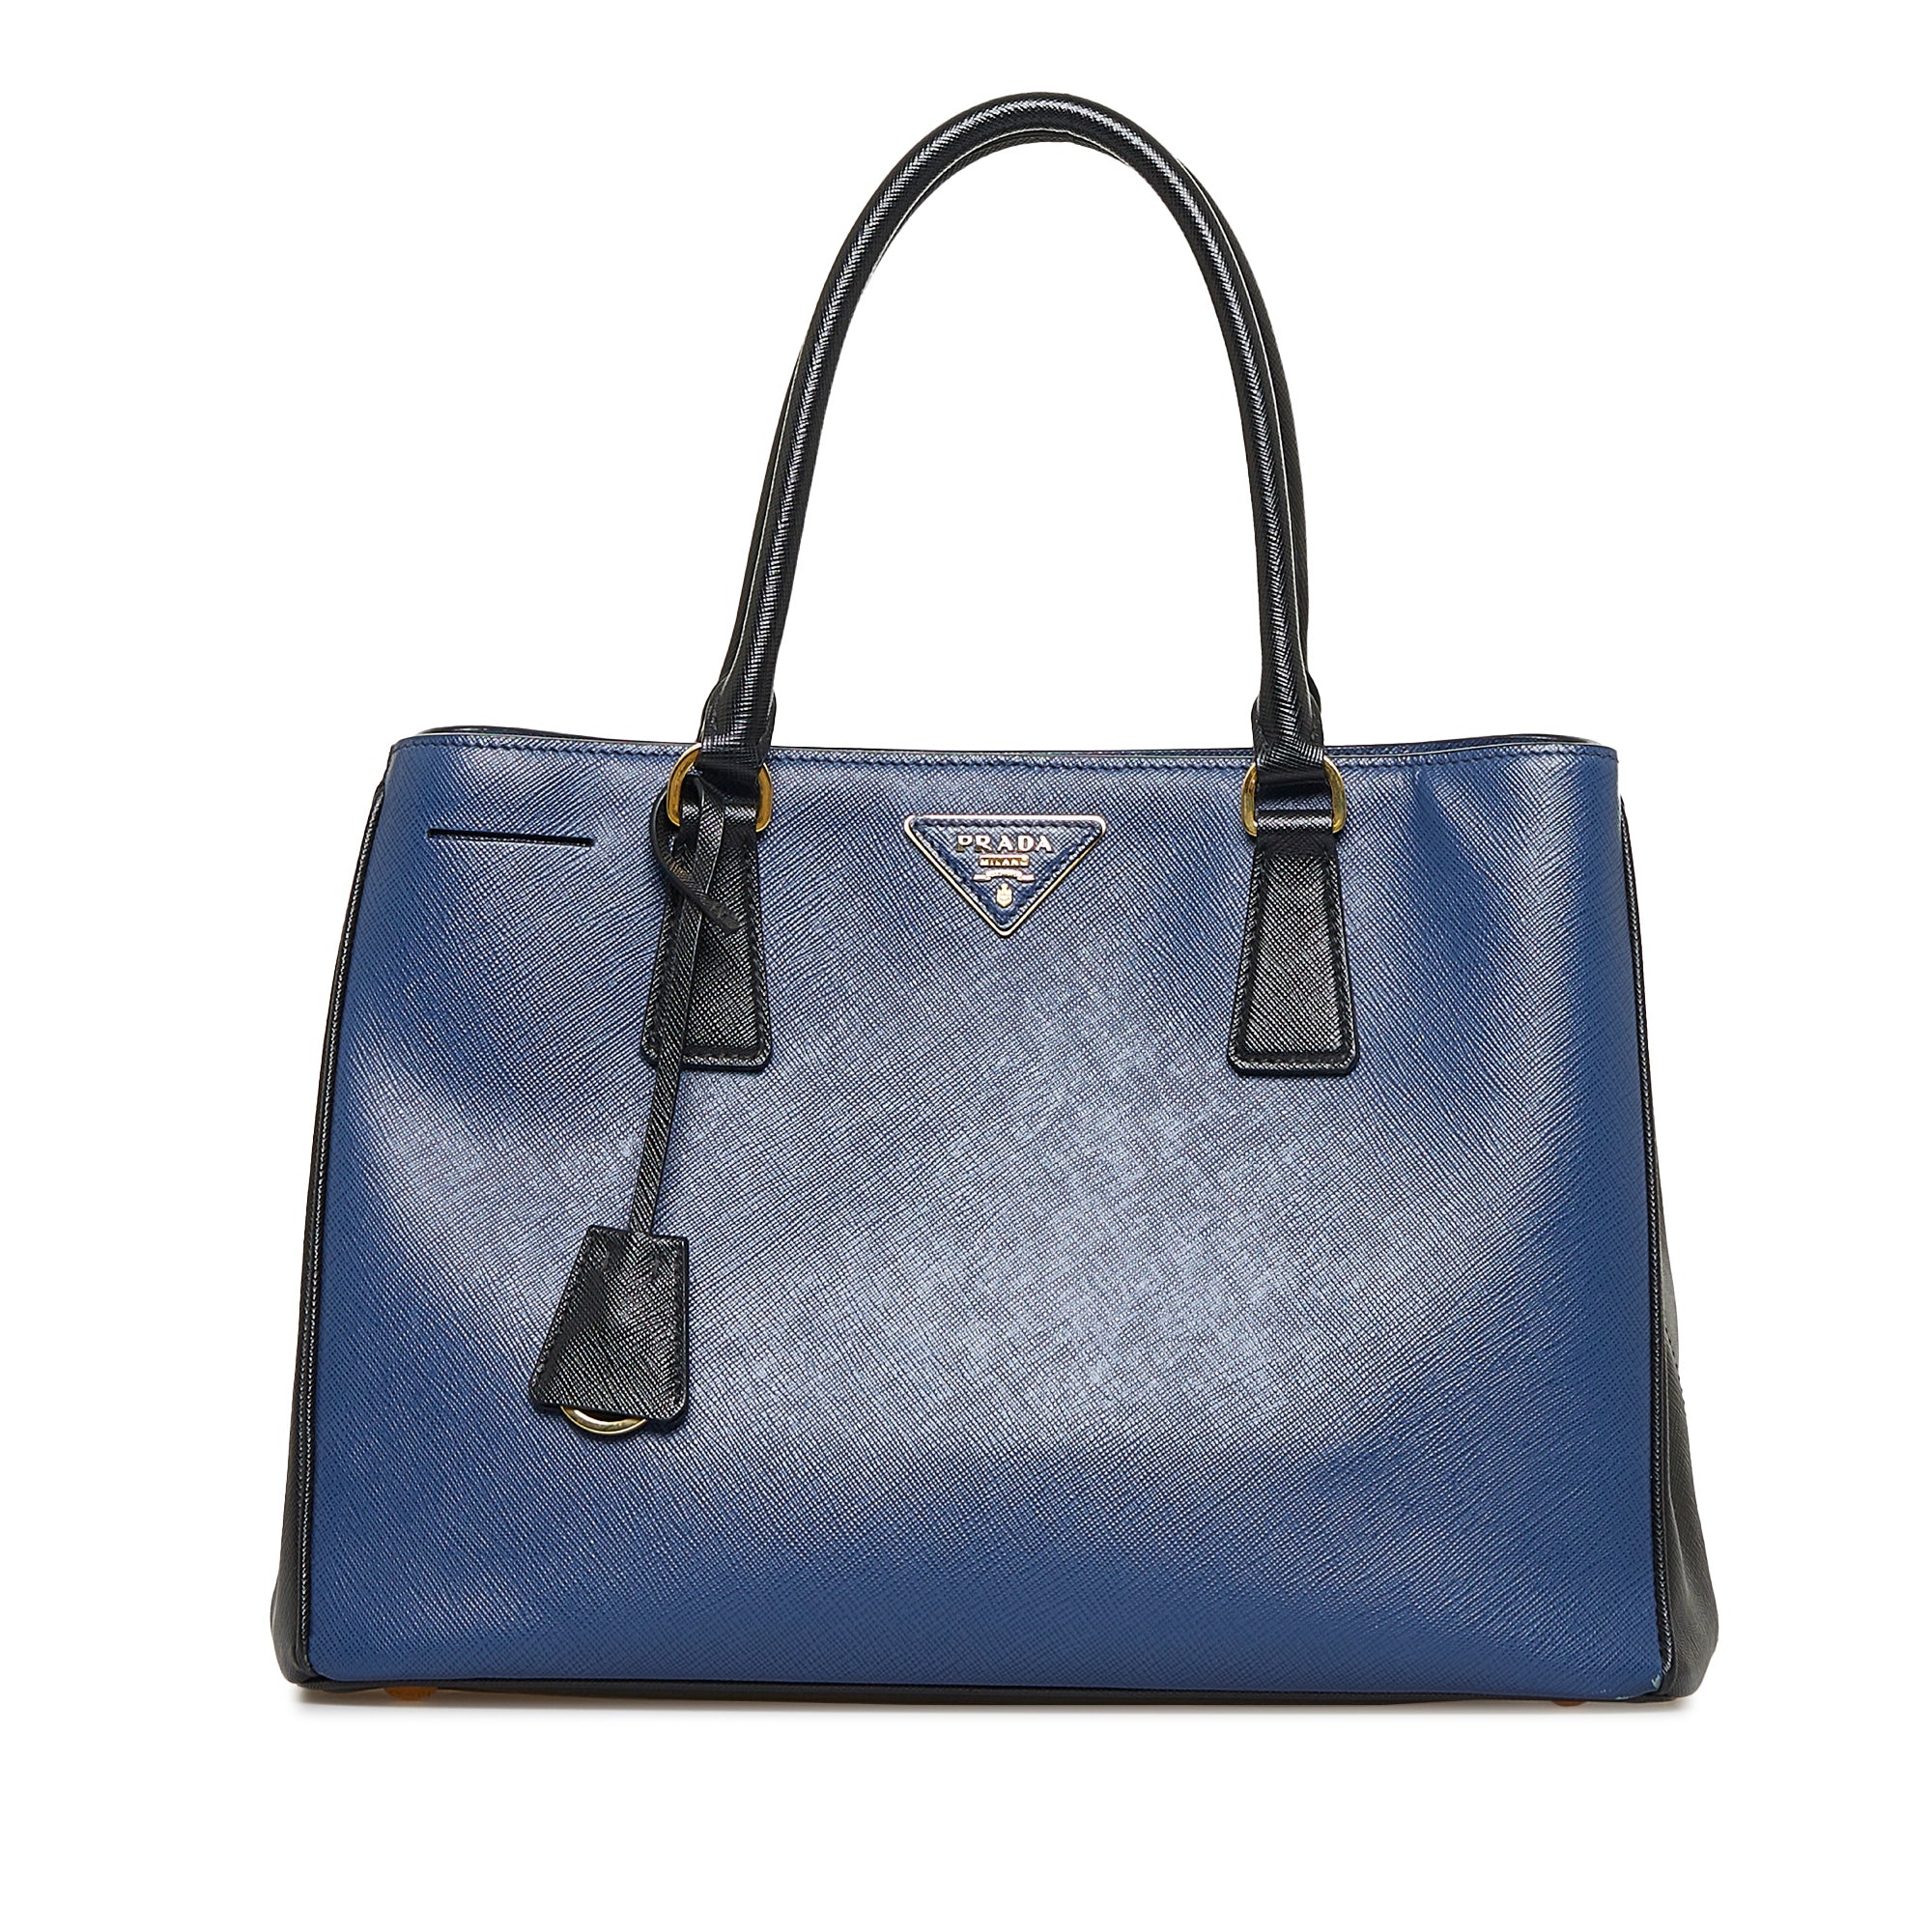 Prada Medium Galleria Saffiano-leather Tote Bag